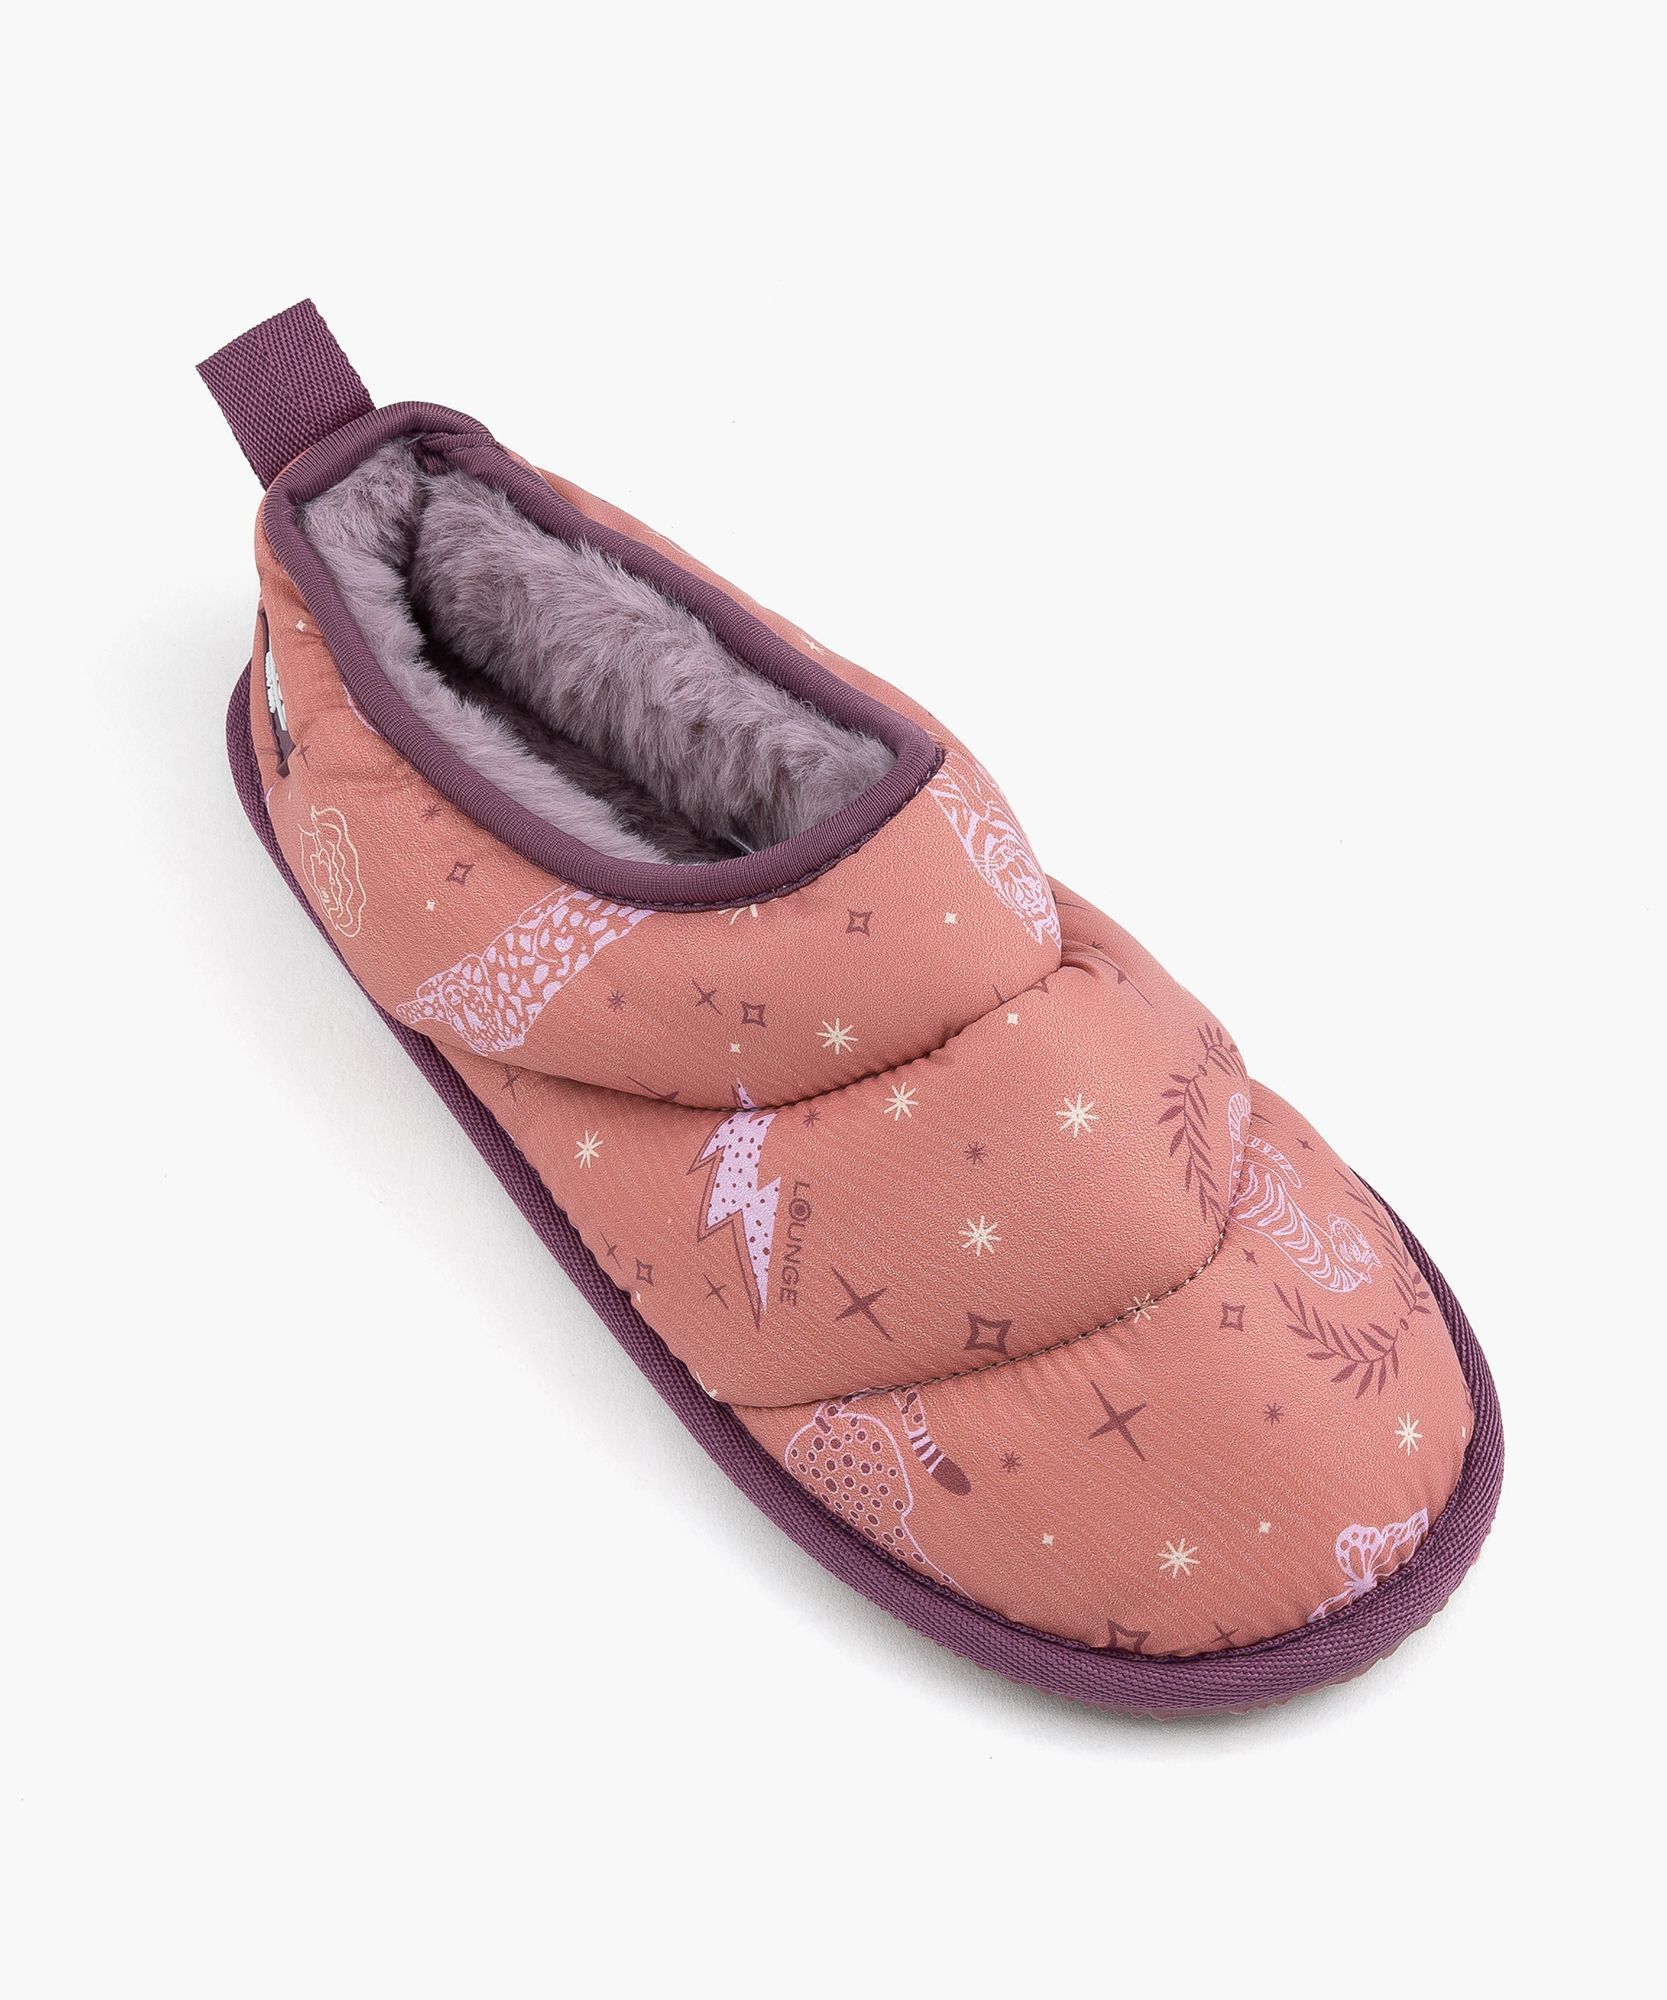 Pantuflas Dreamy - Mujer - Zapatos